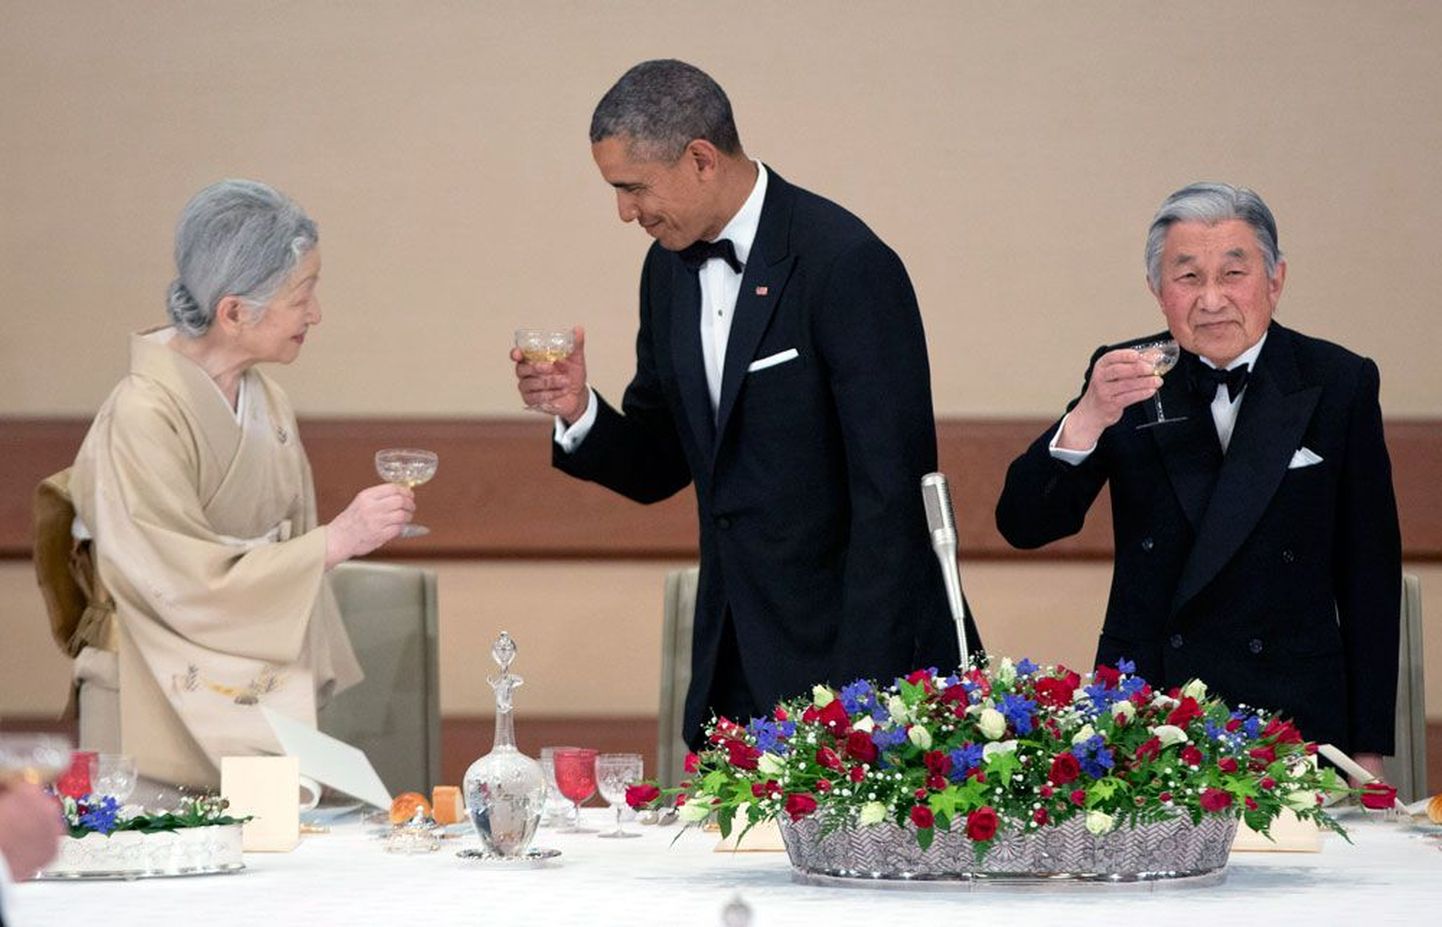 Jaapanit külastav Barack Obama kohtus Tokyos maailma ainsa keisri Akihito ja keisrinna Michikoga.